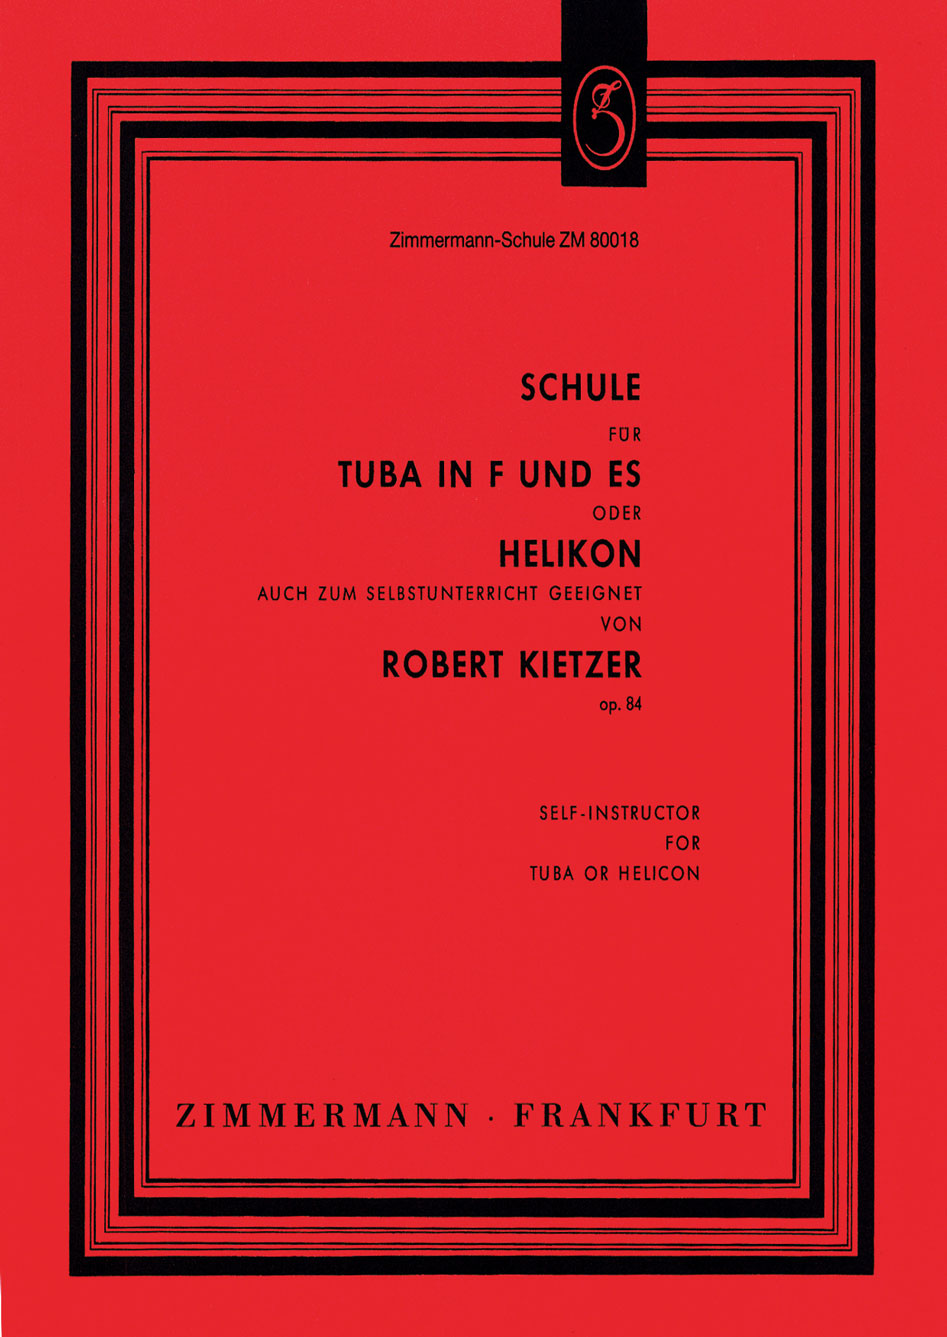 Robert-Kietzer-Schule-fuer-Tuba-in-F-und-Es-op-84-_0001.JPG